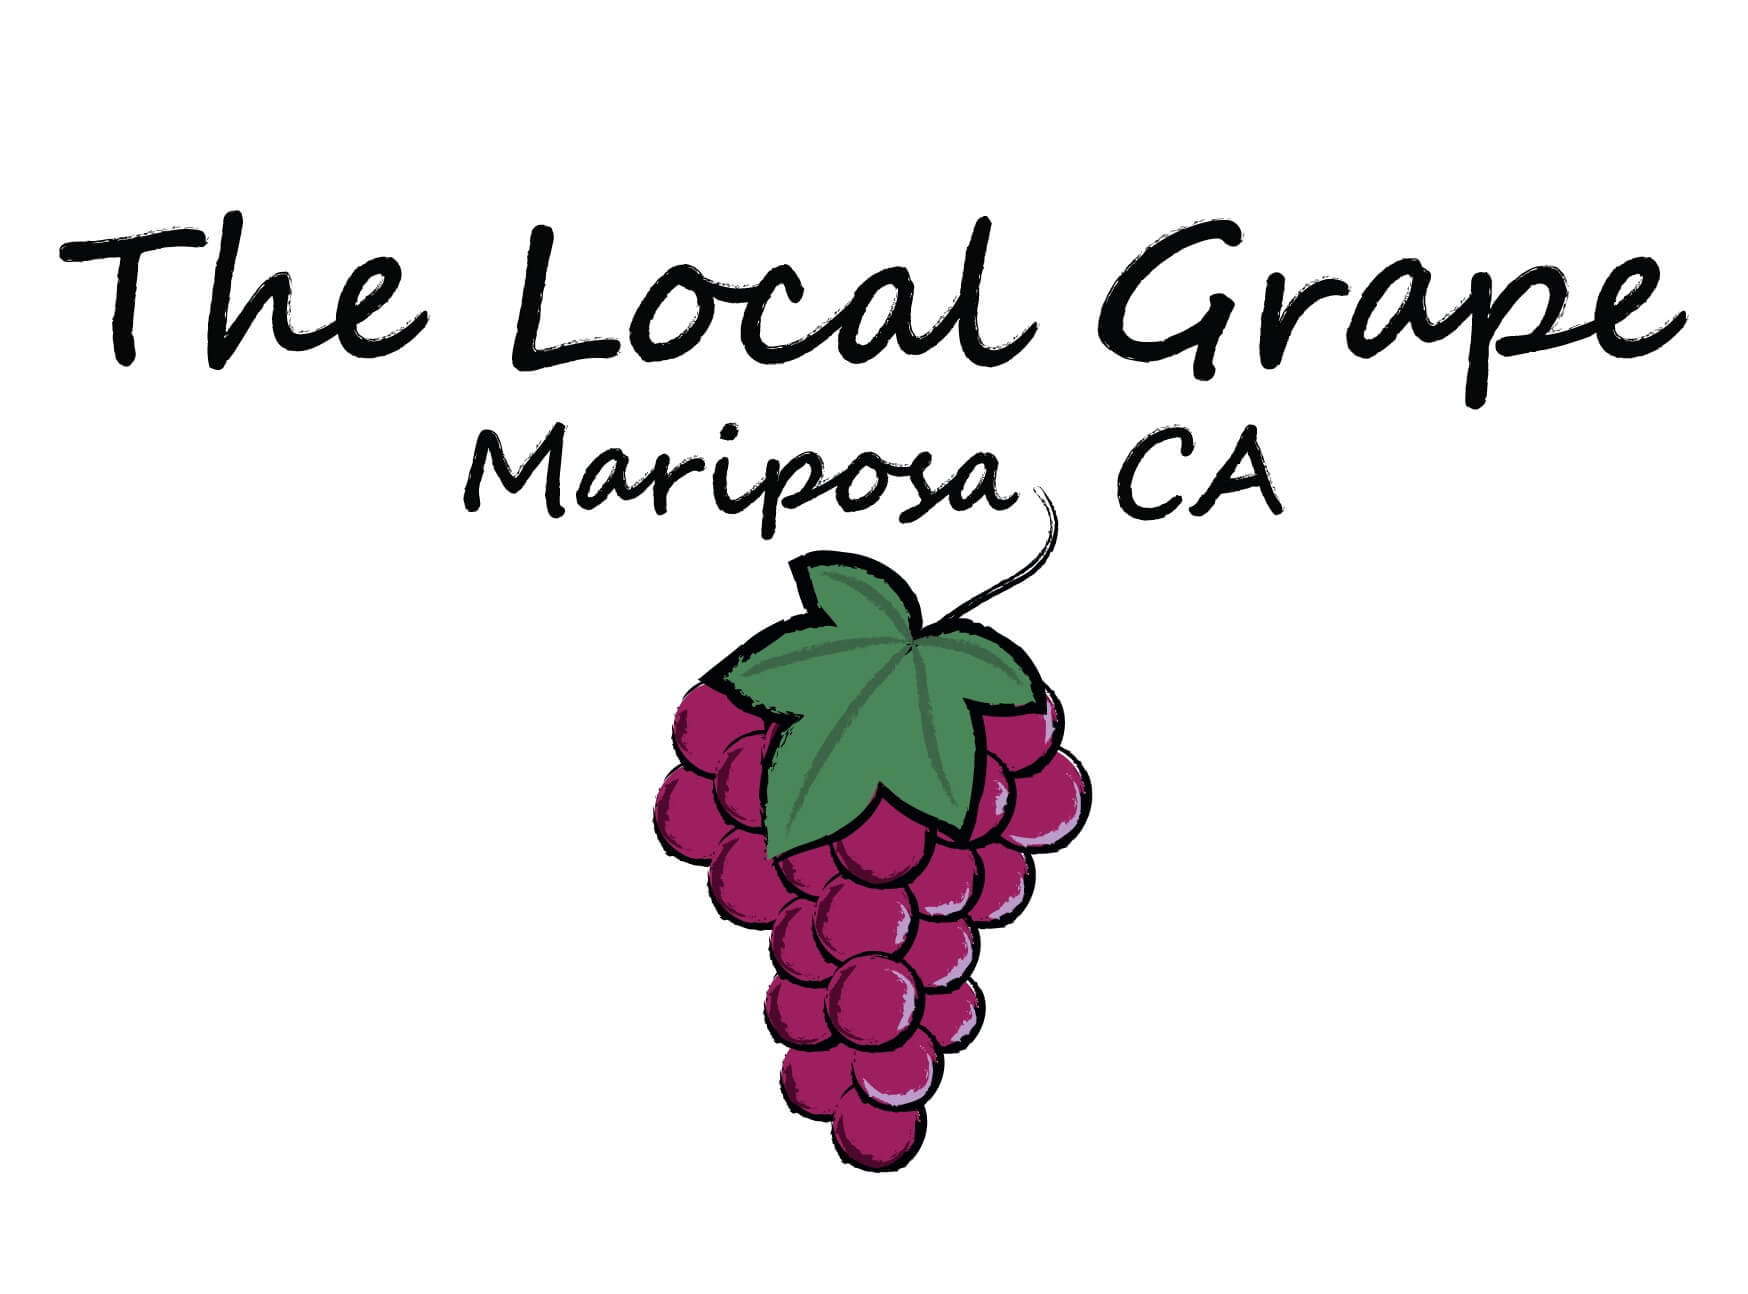 The Local Grape